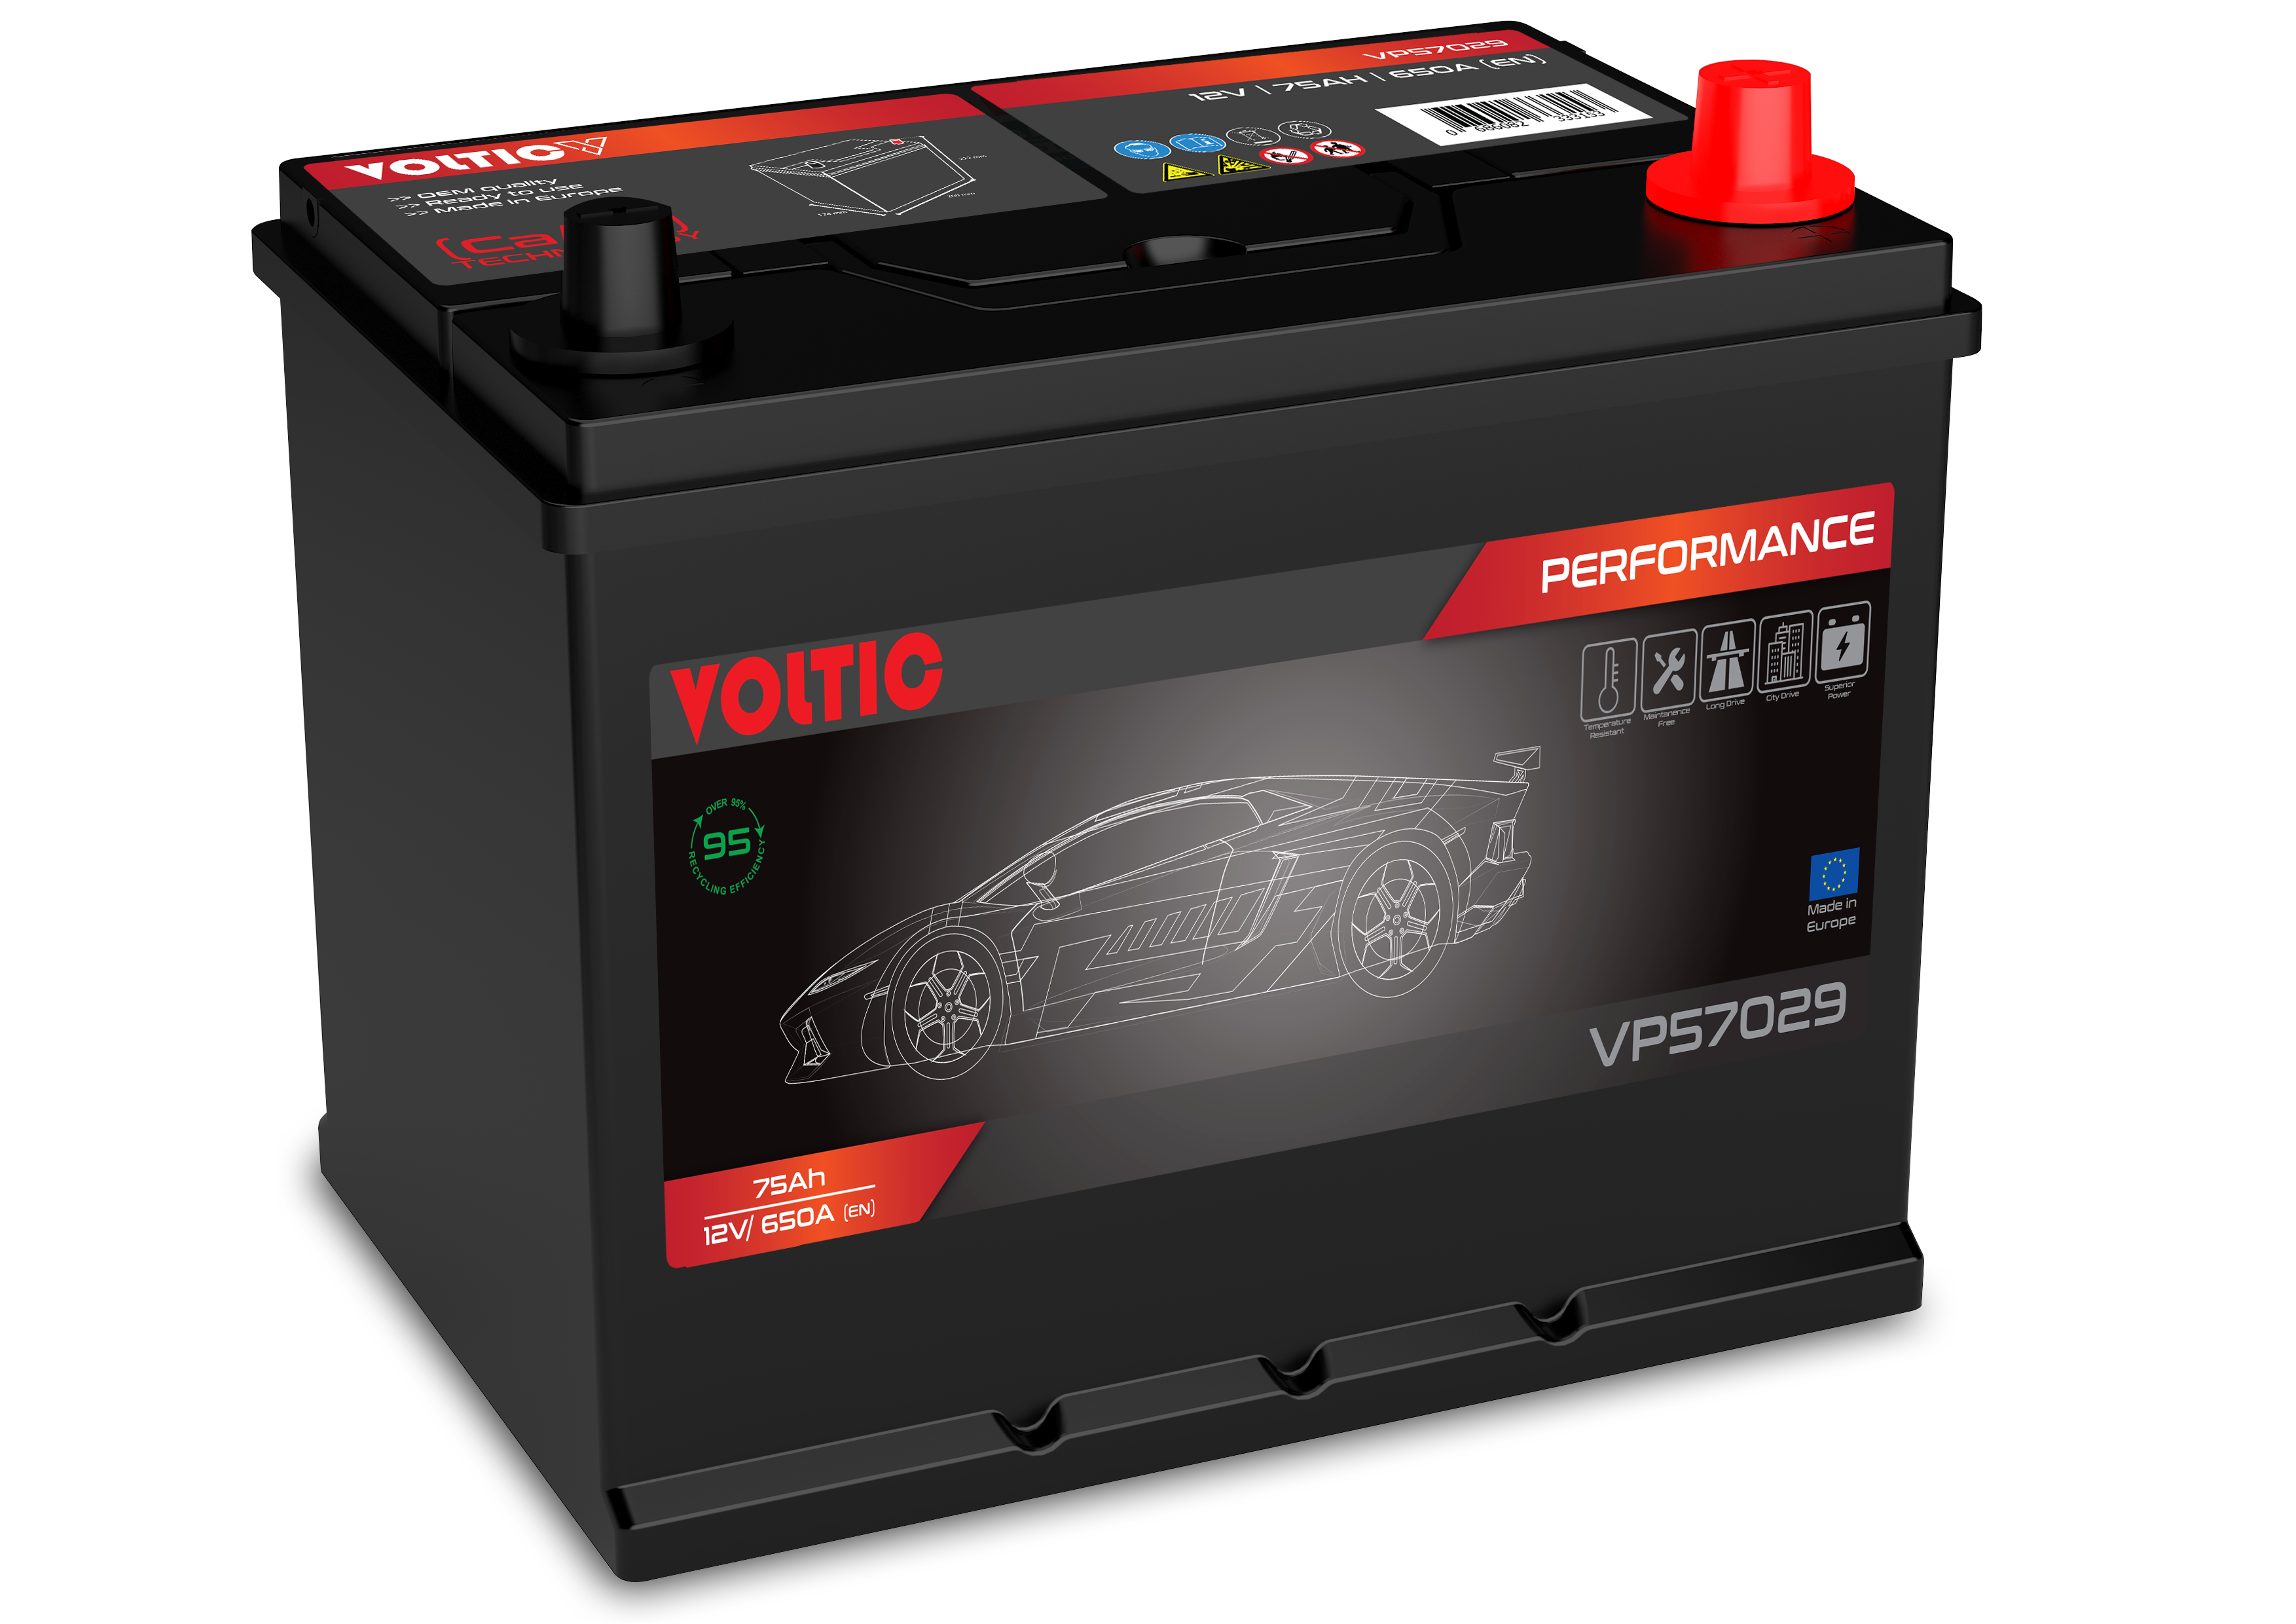 Voltic VP57029 Perfomance 75Ah Autobatterie 570 412 063